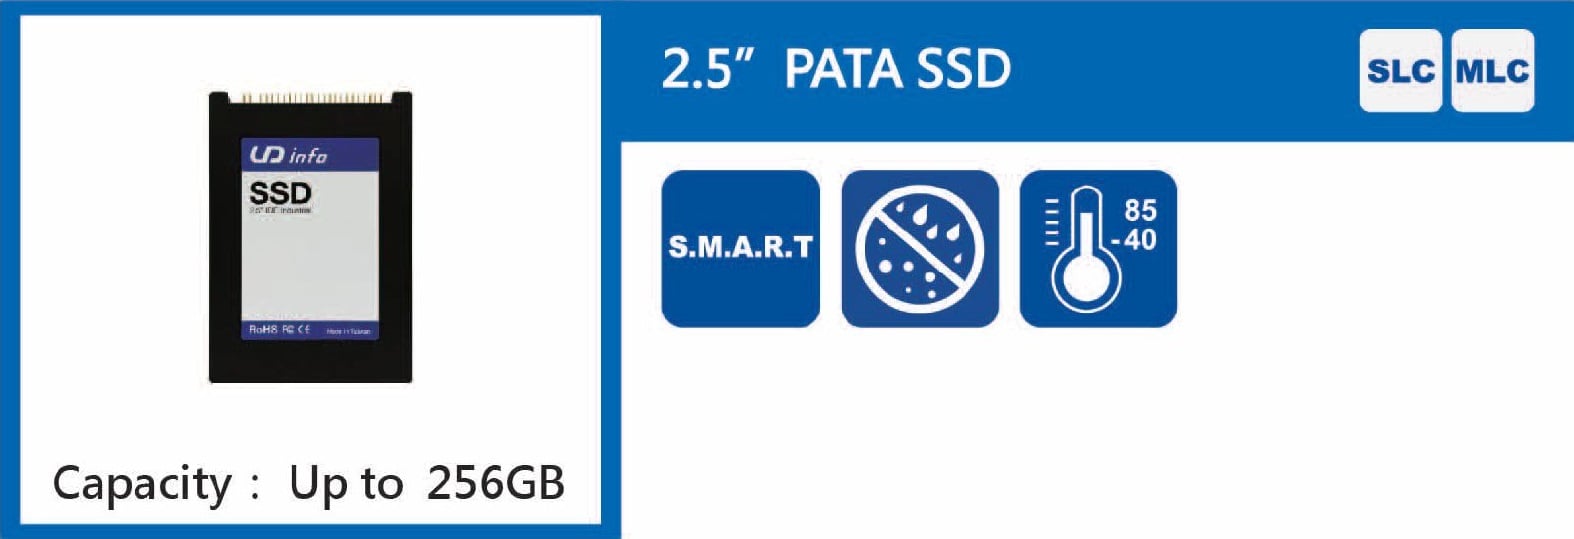 16_PATA_SSD_2.5